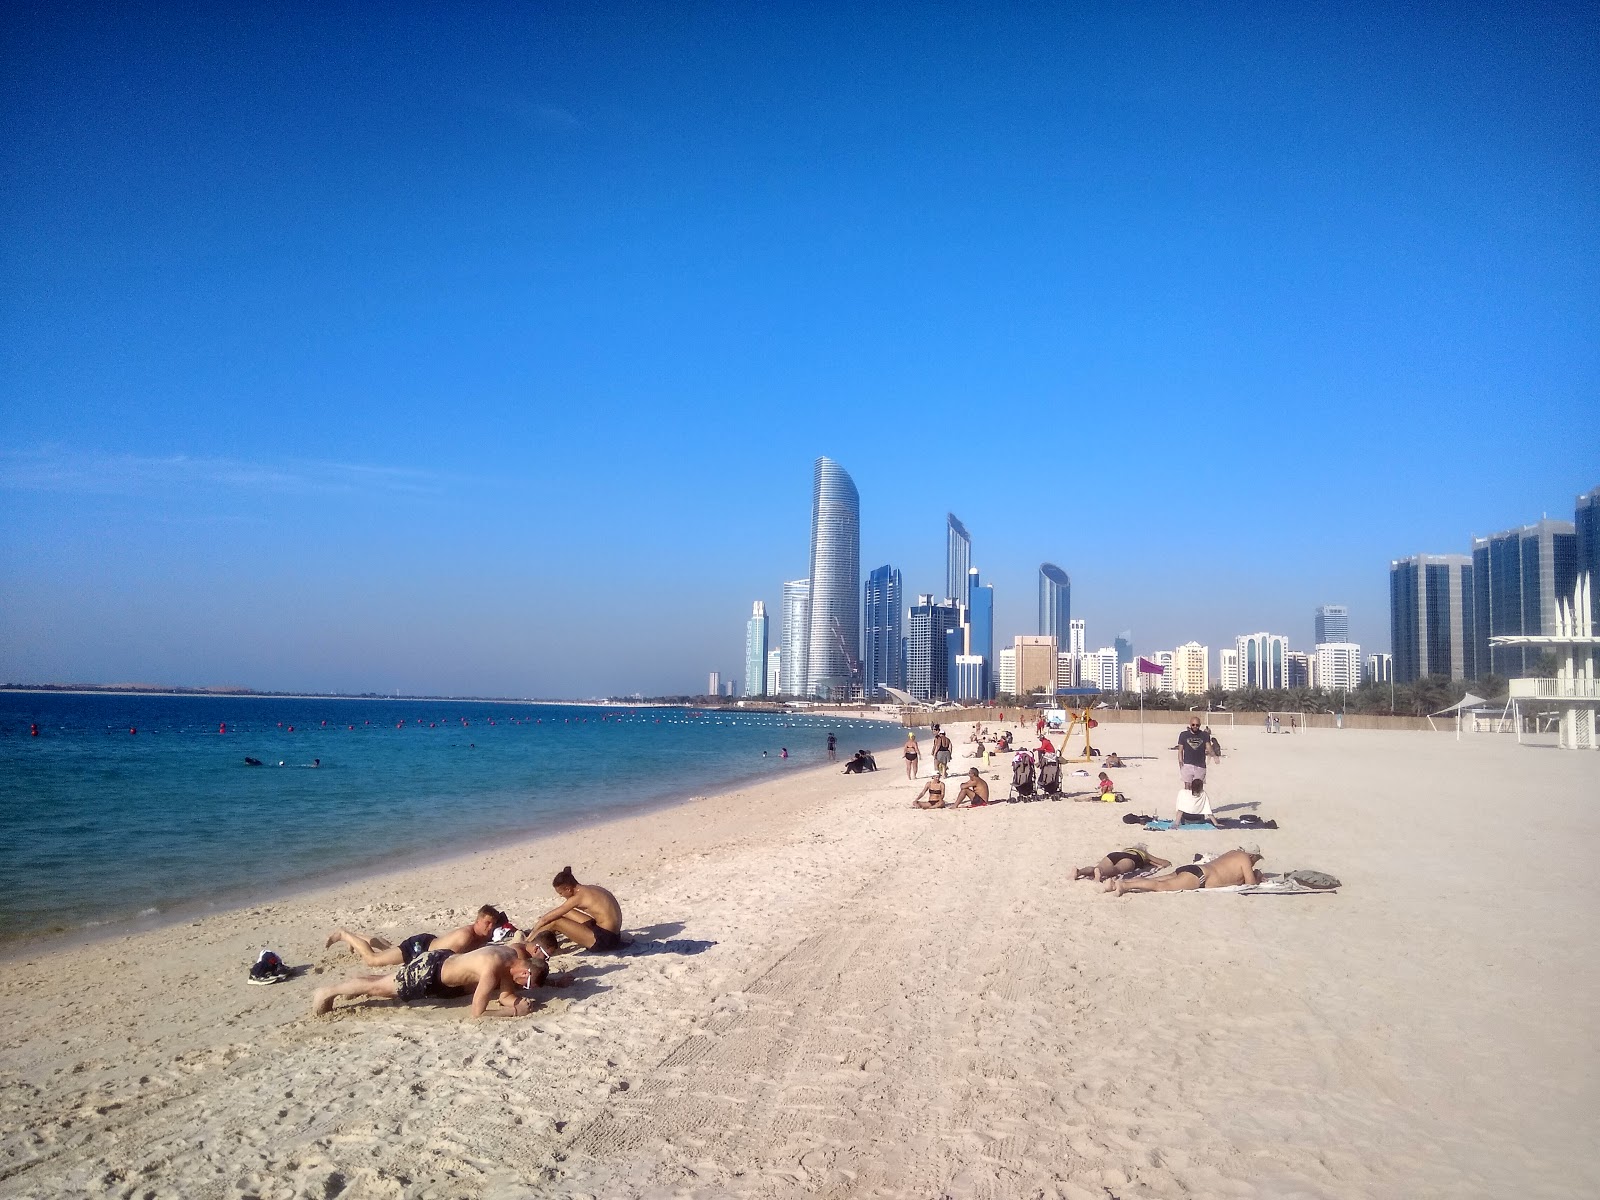 Corniche beach'in fotoğrafı beyaz ince kum yüzey ile